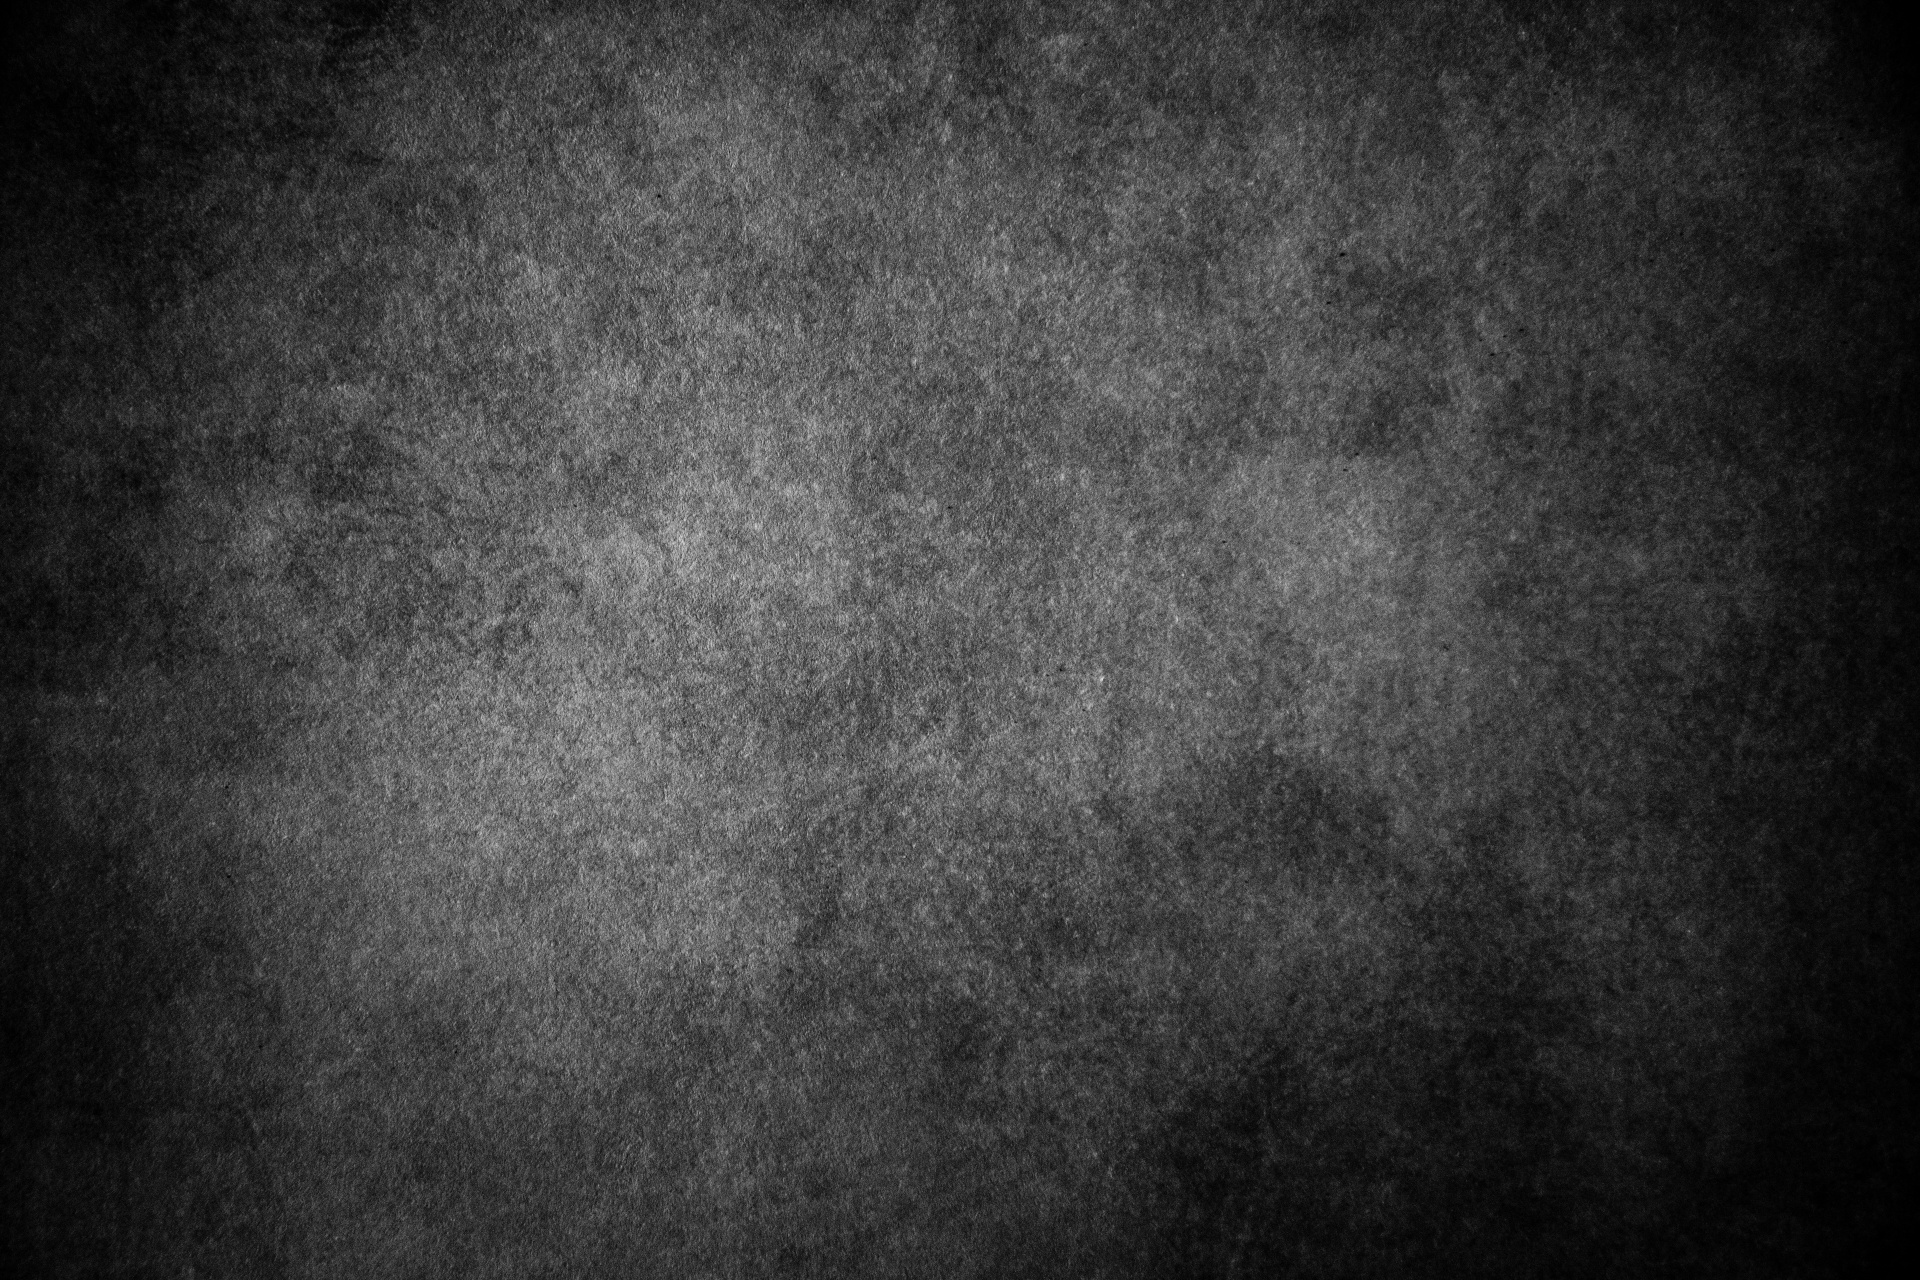 Grunge Background Best Wallpaper - Photoshop Mass Black Background - HD Wallpaper 